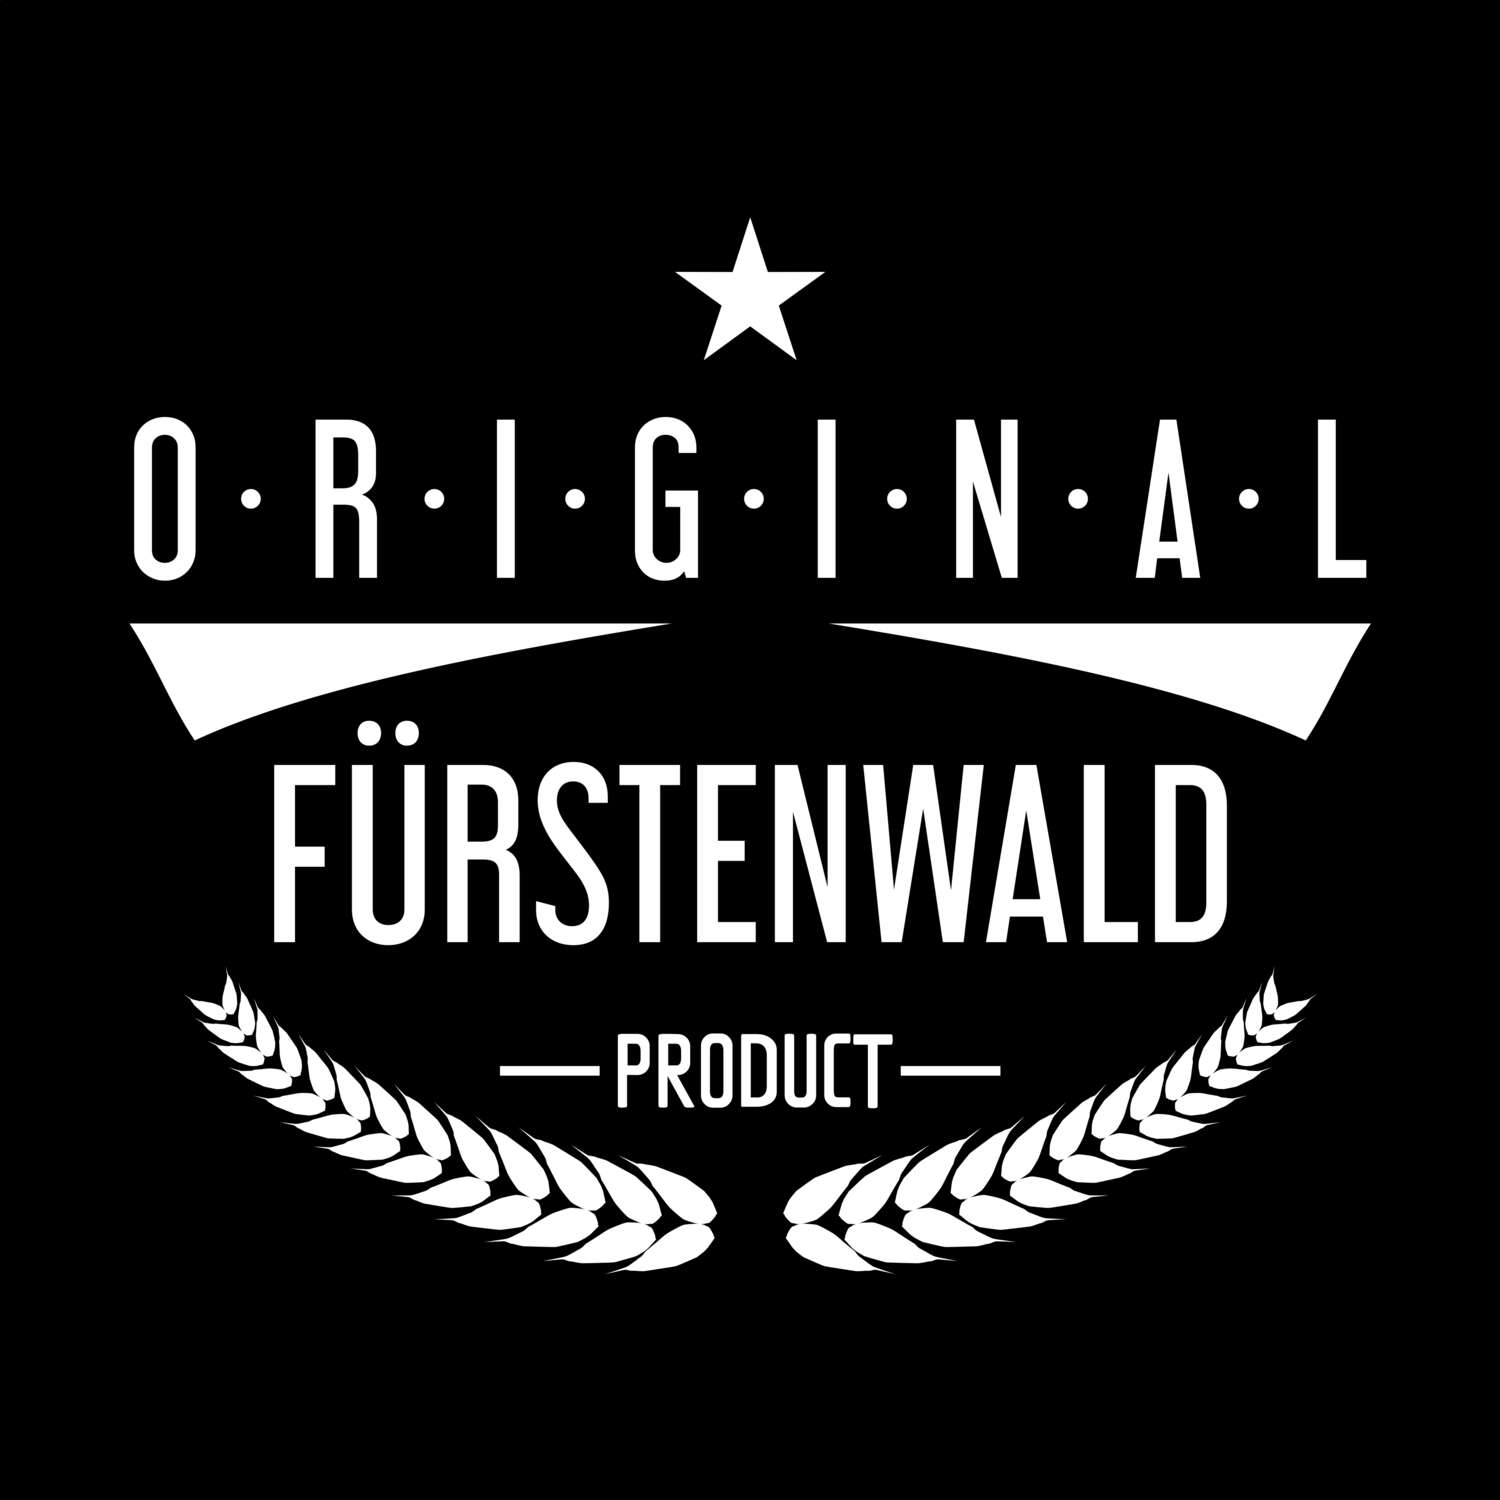 Fürstenwald T-Shirt »Original Product«